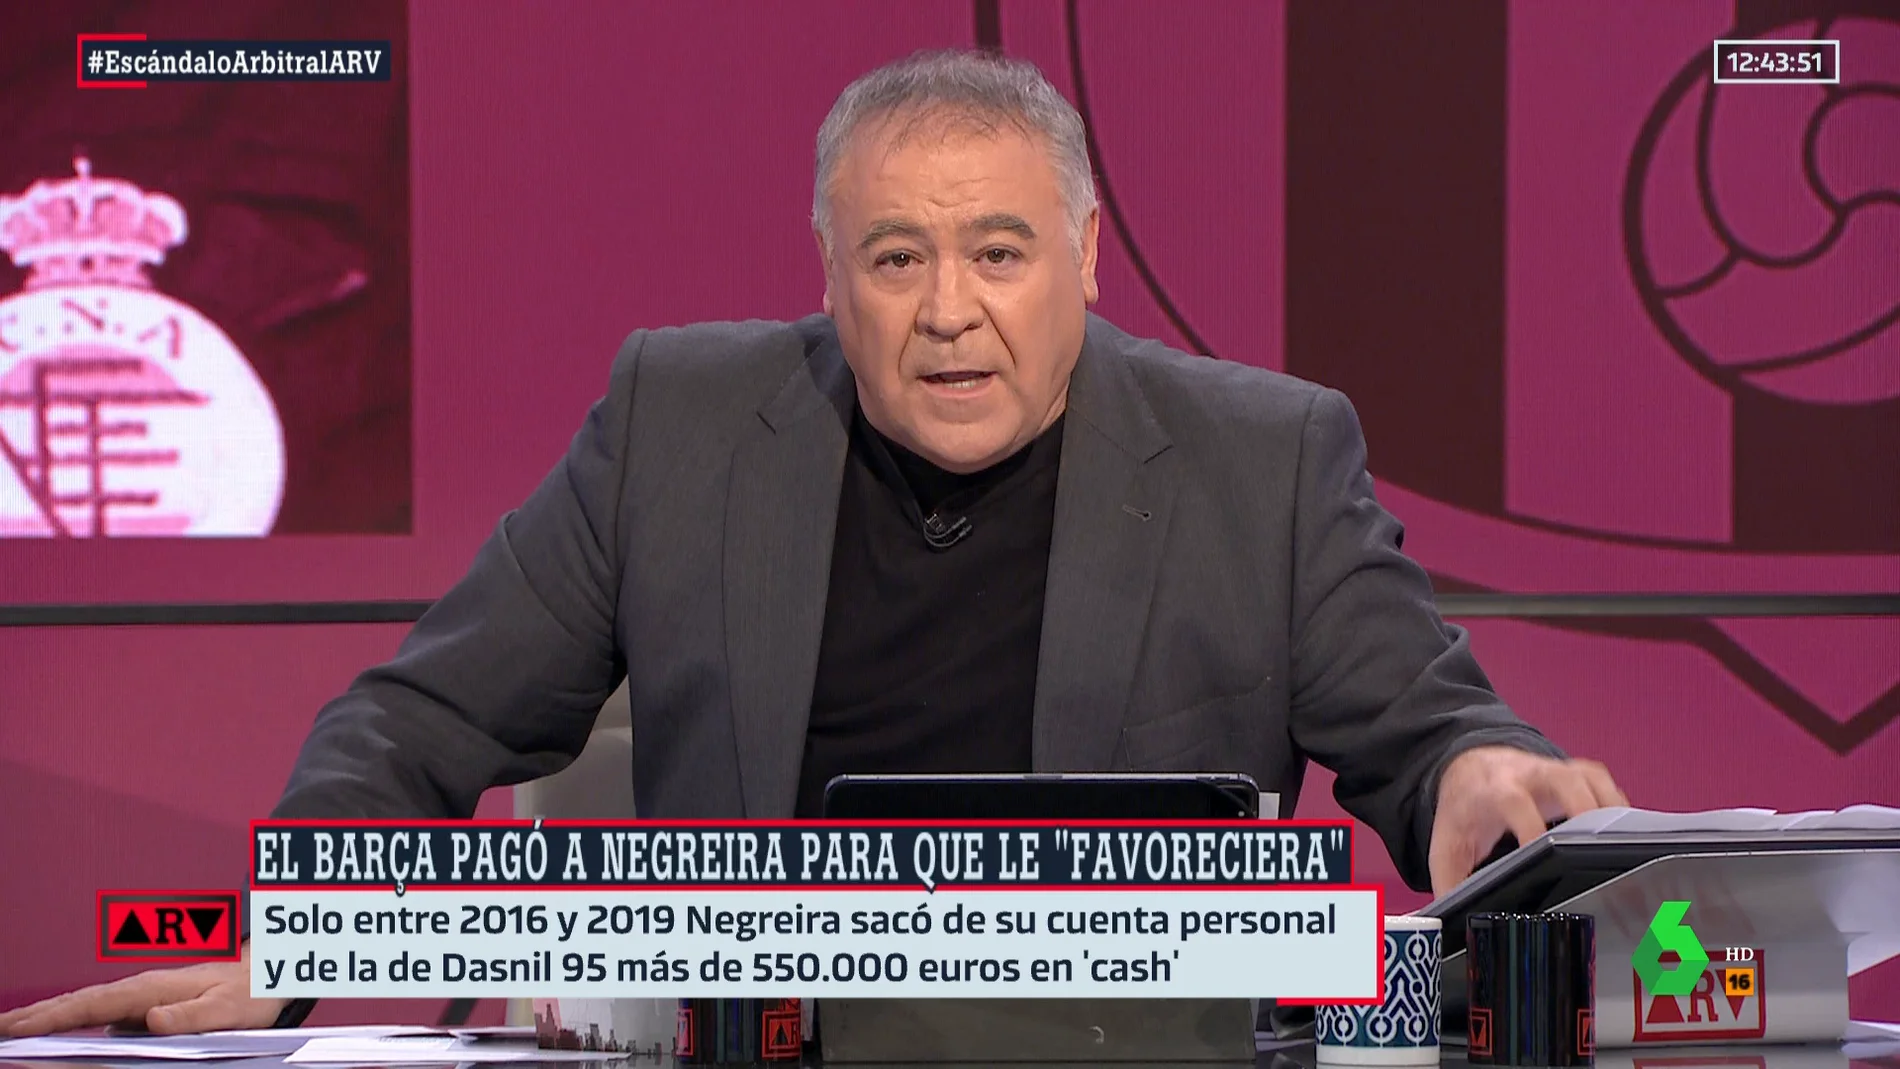  Ferreras, tajante sobre el 'caso Negreira': "Se están riendo de los socios del Barça"